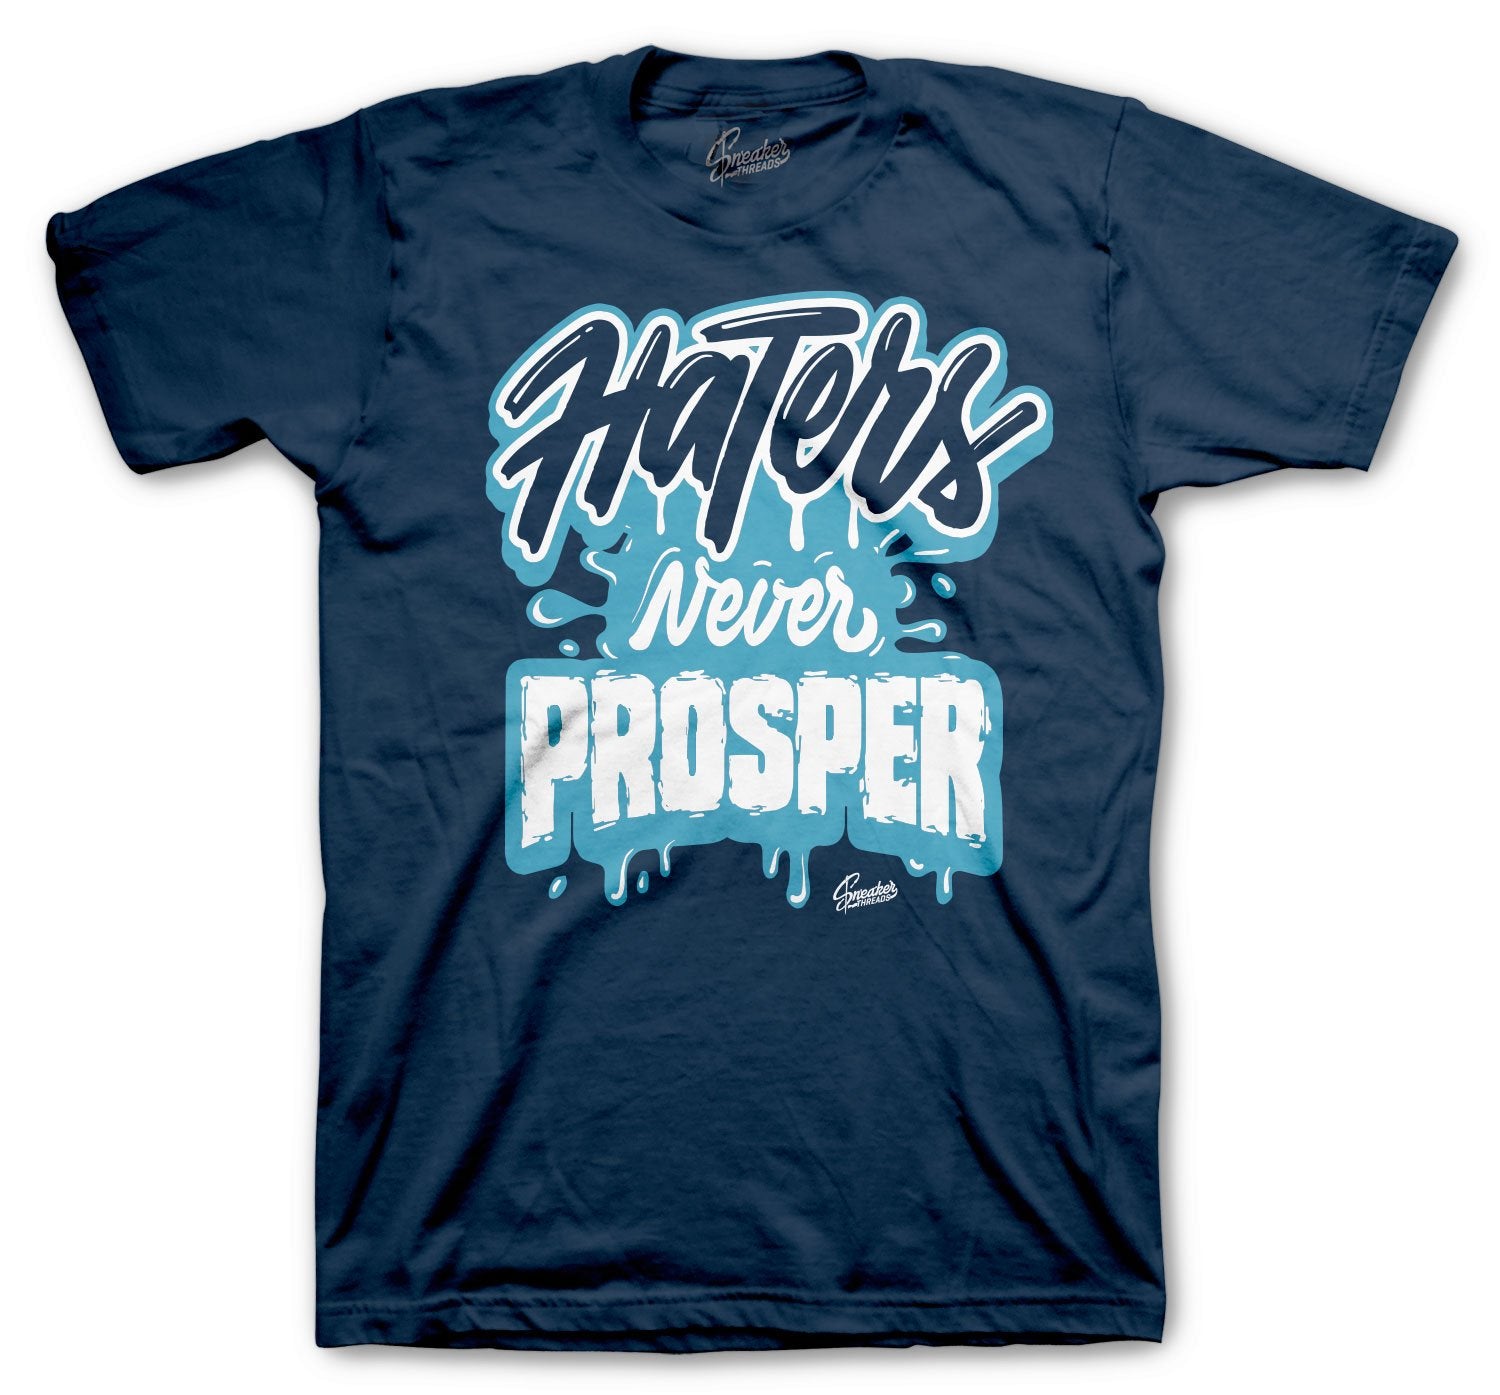 Never Prosper T-Shirt - Retro 13 Obsidian